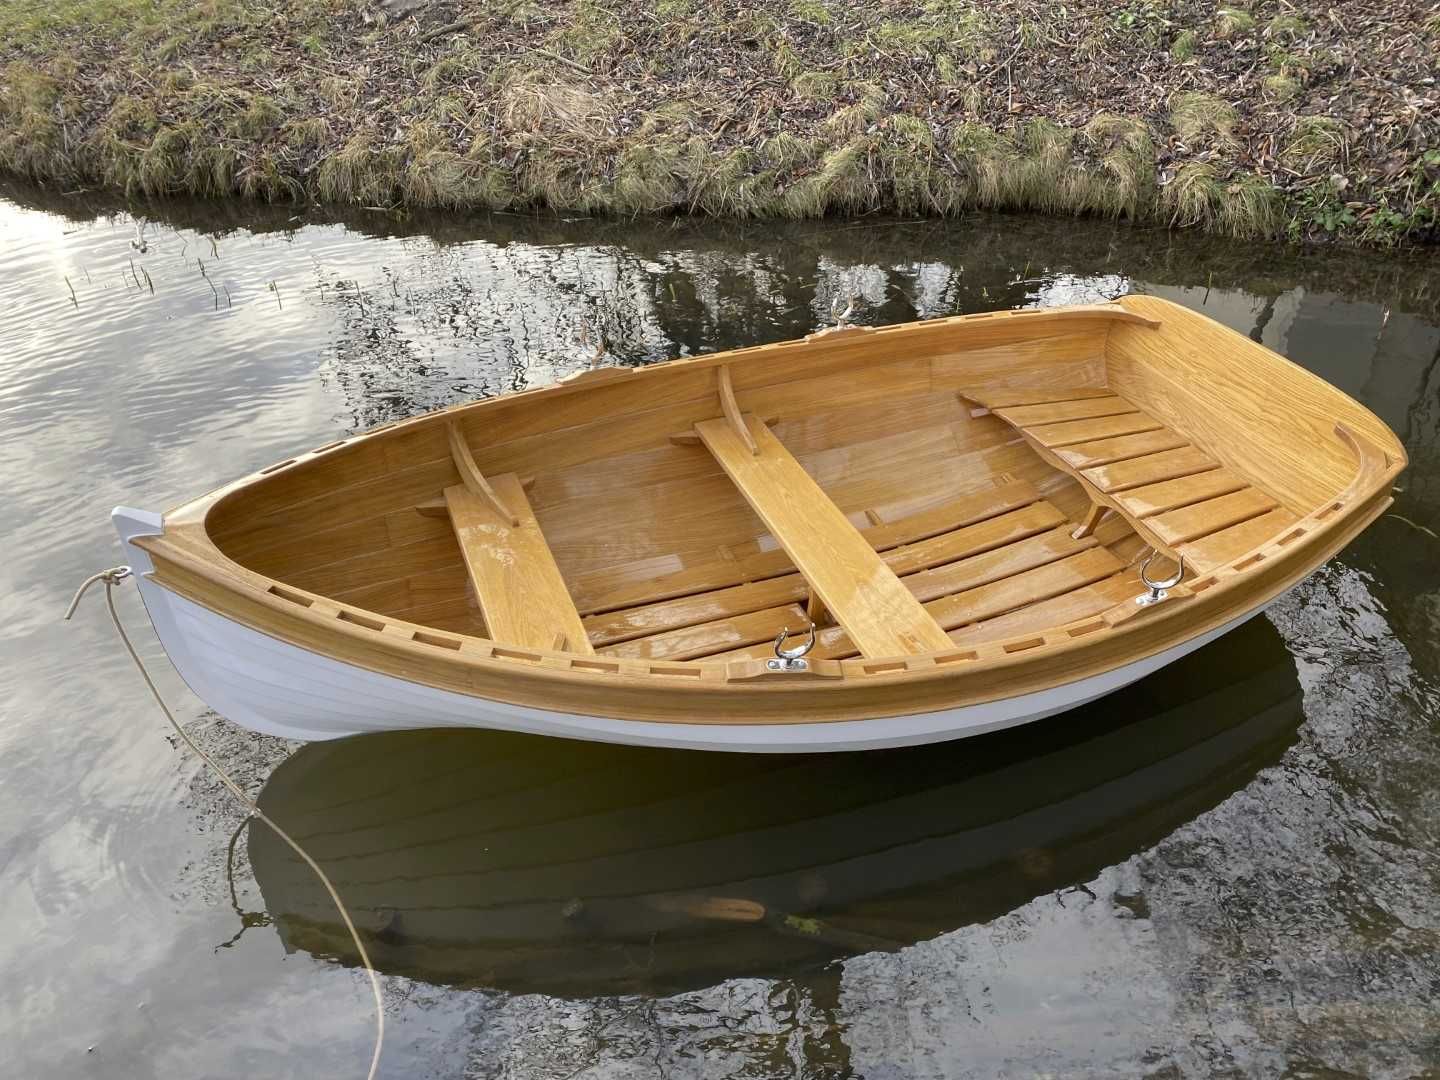 Łódź, łódka drewniana, żaglówka, bączek dingi, dinghy, jacht